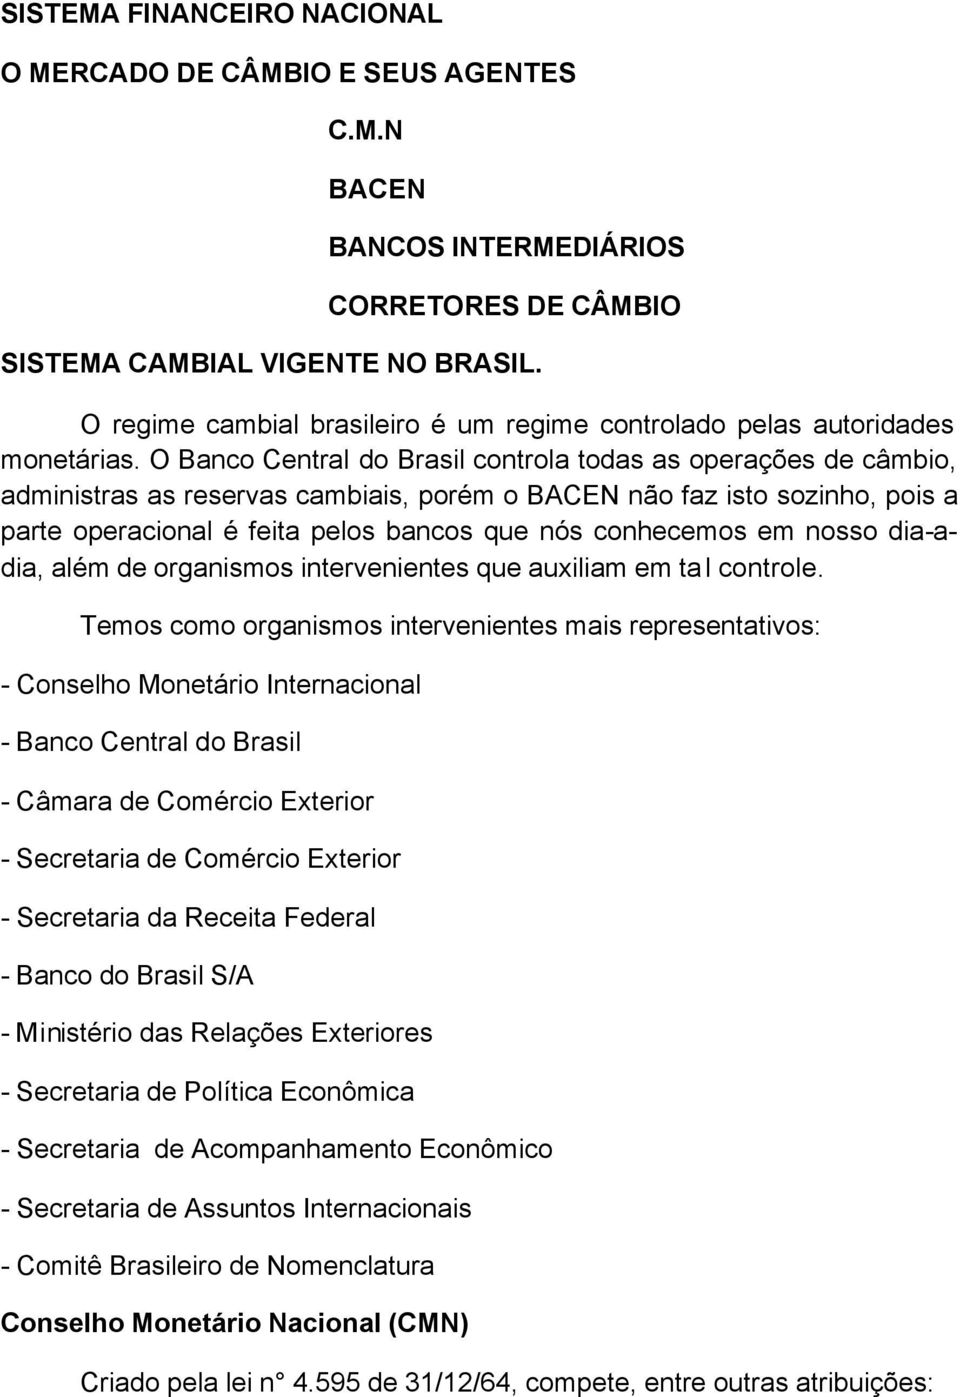 O Banco Central do Brasil controla todas as operações de câmbio, administras as reservas cambiais, porém o BACEN não faz isto sozinho, pois a parte operacional é feita pelos bancos que nós conhecemos